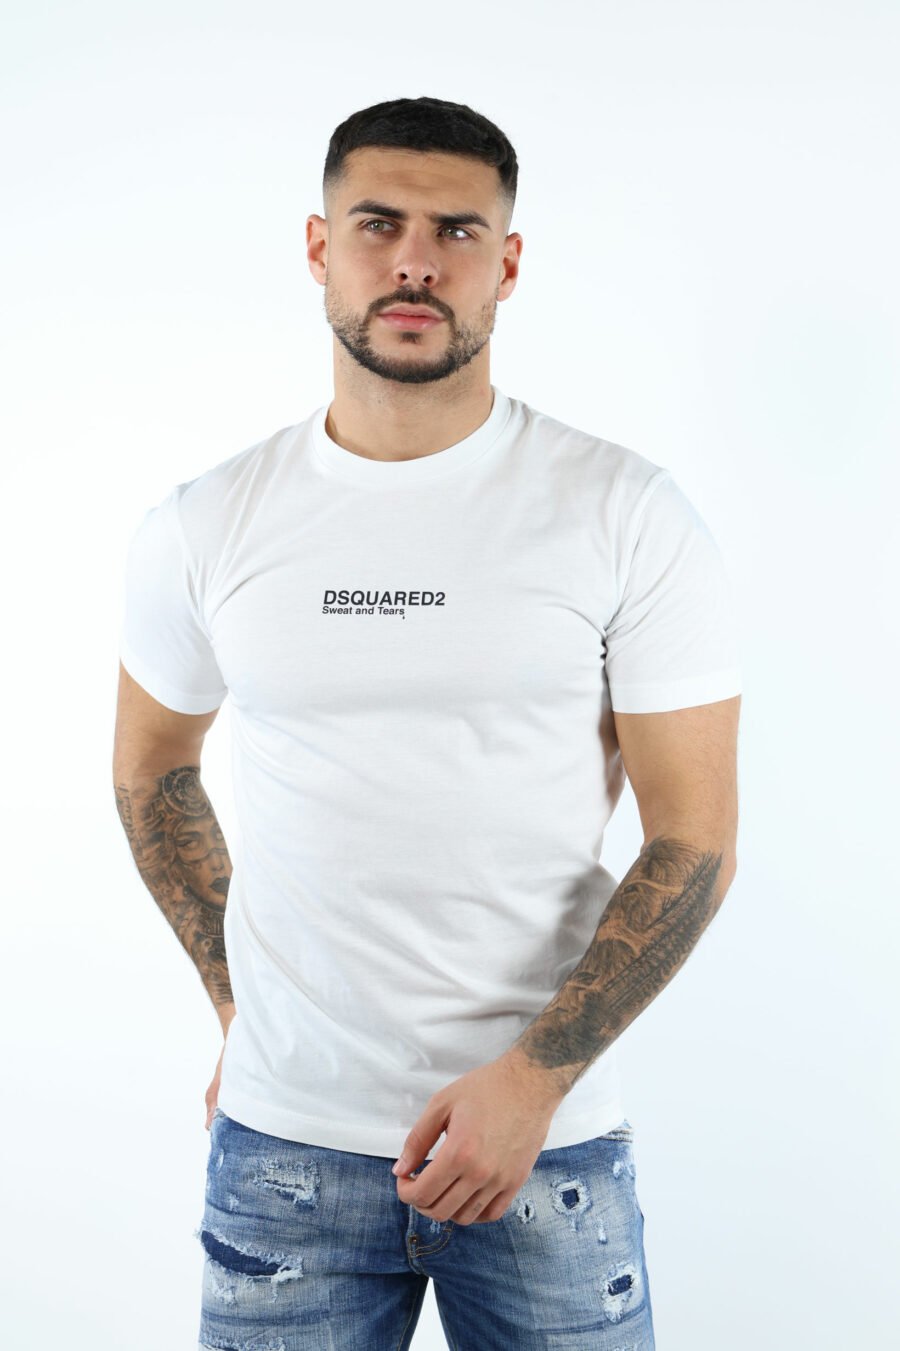 Dsquared2 - T-shirt branca com o logótipo suor e lágrimas - BLS Fashion